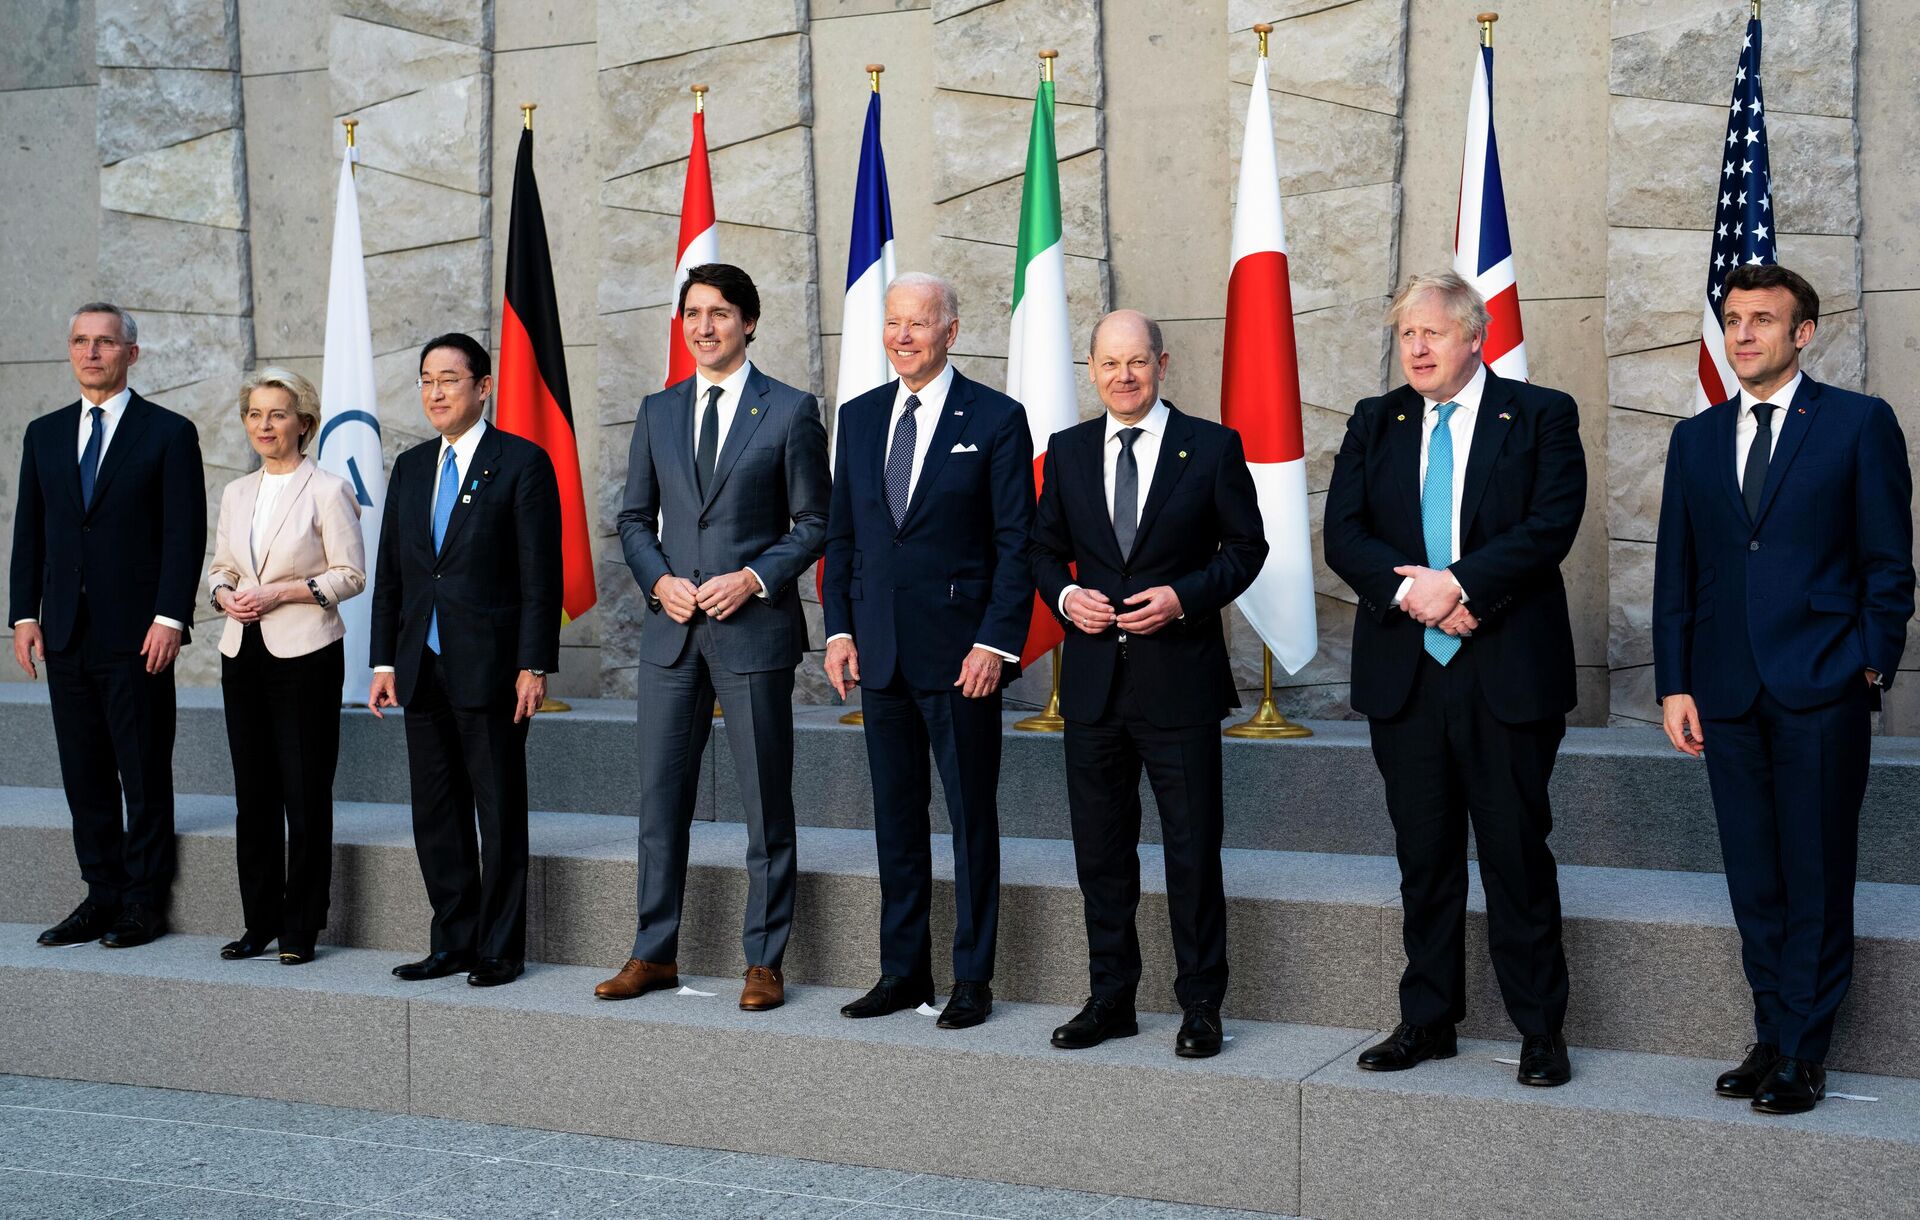 Da esquerda para a direita: o secretário-geral da OTAN, Jens Stoltenberg; a presidente da Comissão Europeia, Ursula von der Leyen; o primeiro-ministro do Japão, Fumio Kishida; o primeiro-ministro do Canadá, Justin Trudeau; o presidente dos EUA, Joe Biden; o chanceler da Alemanha, Olaf Scholz; o primeiro-ministro britânico, Boris Johnson; e o presidente da França, Emmanuel Macron. Os representantes posam para uma foto de grupo dos líderes do G7 durante cúpula da OTAN, em Bruxelas, Bélgica, 24 de março de 2022 - Sputnik Brasil, 1920, 20.01.2023